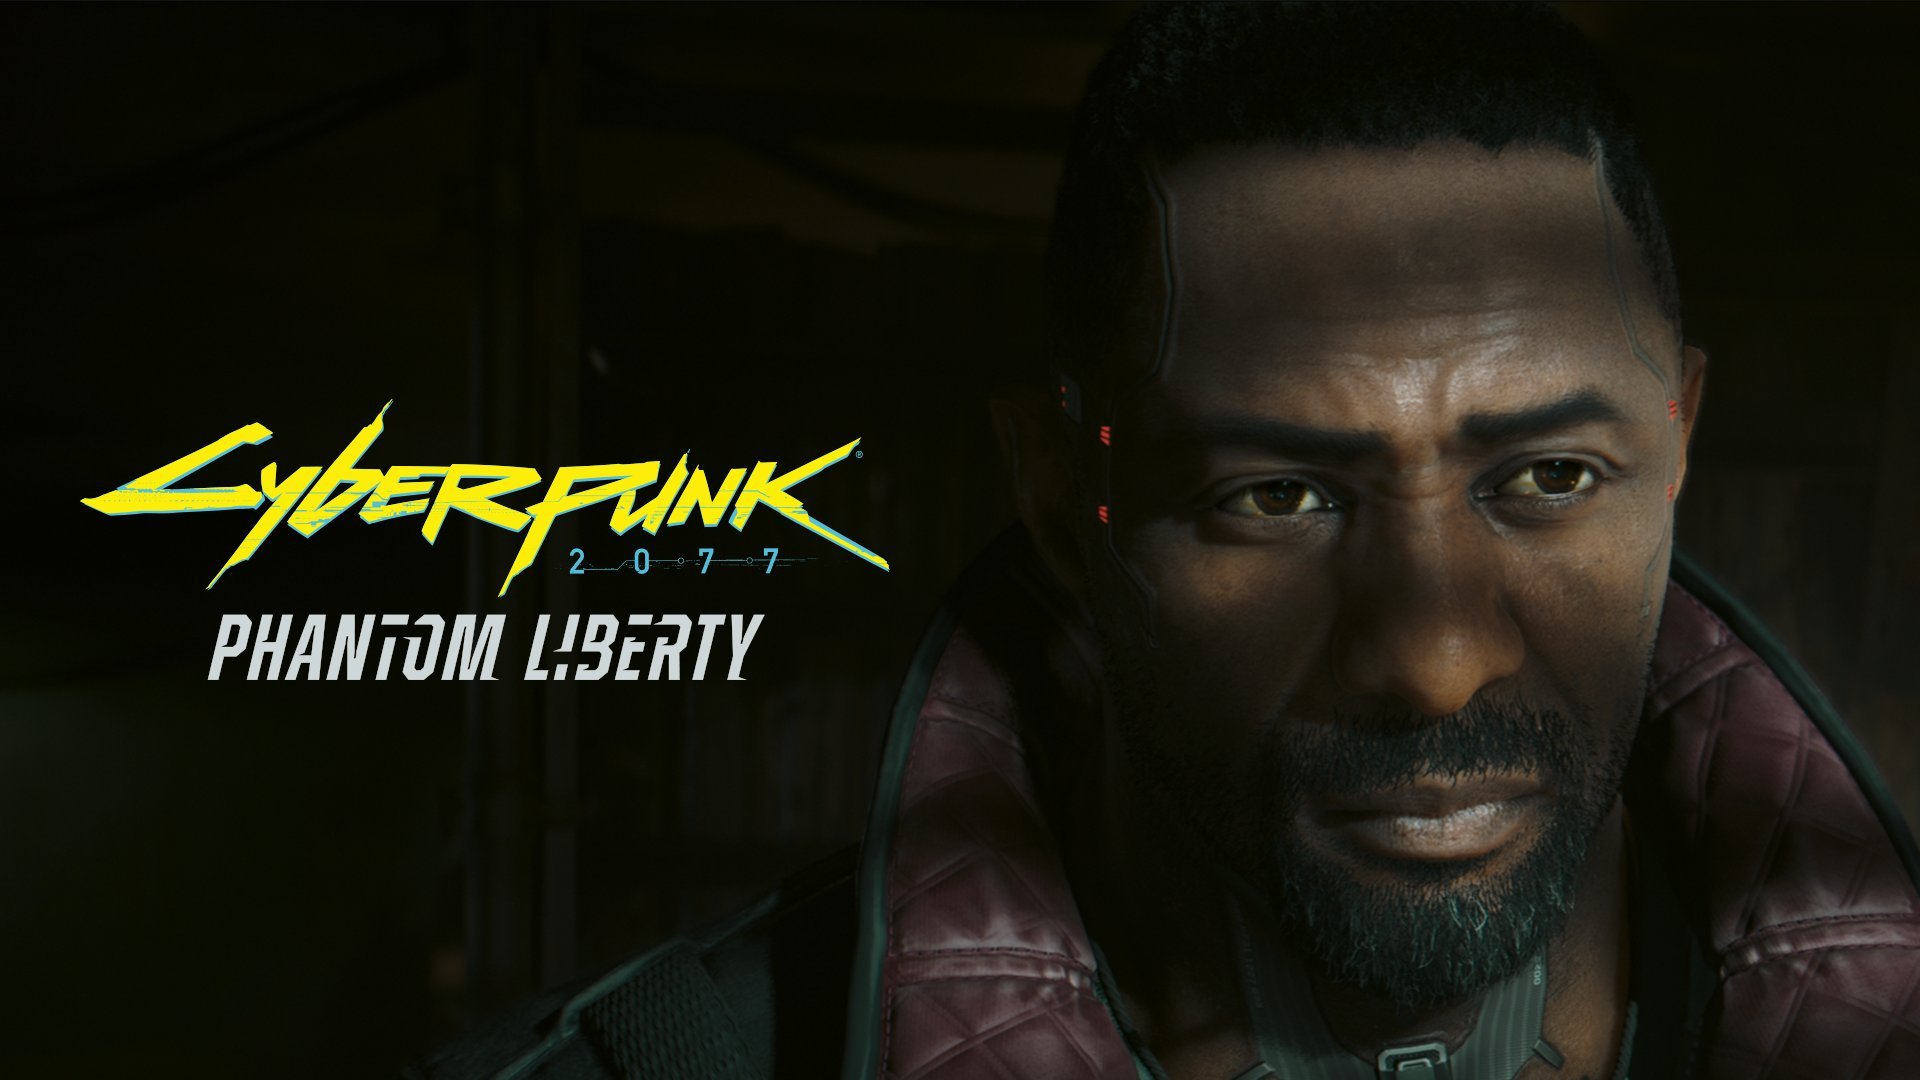 Preis- und Vorbestellungsleck für Cyberpunk 2077 Phantom Liberty vor Veröffentlichung der Xbox-Demo